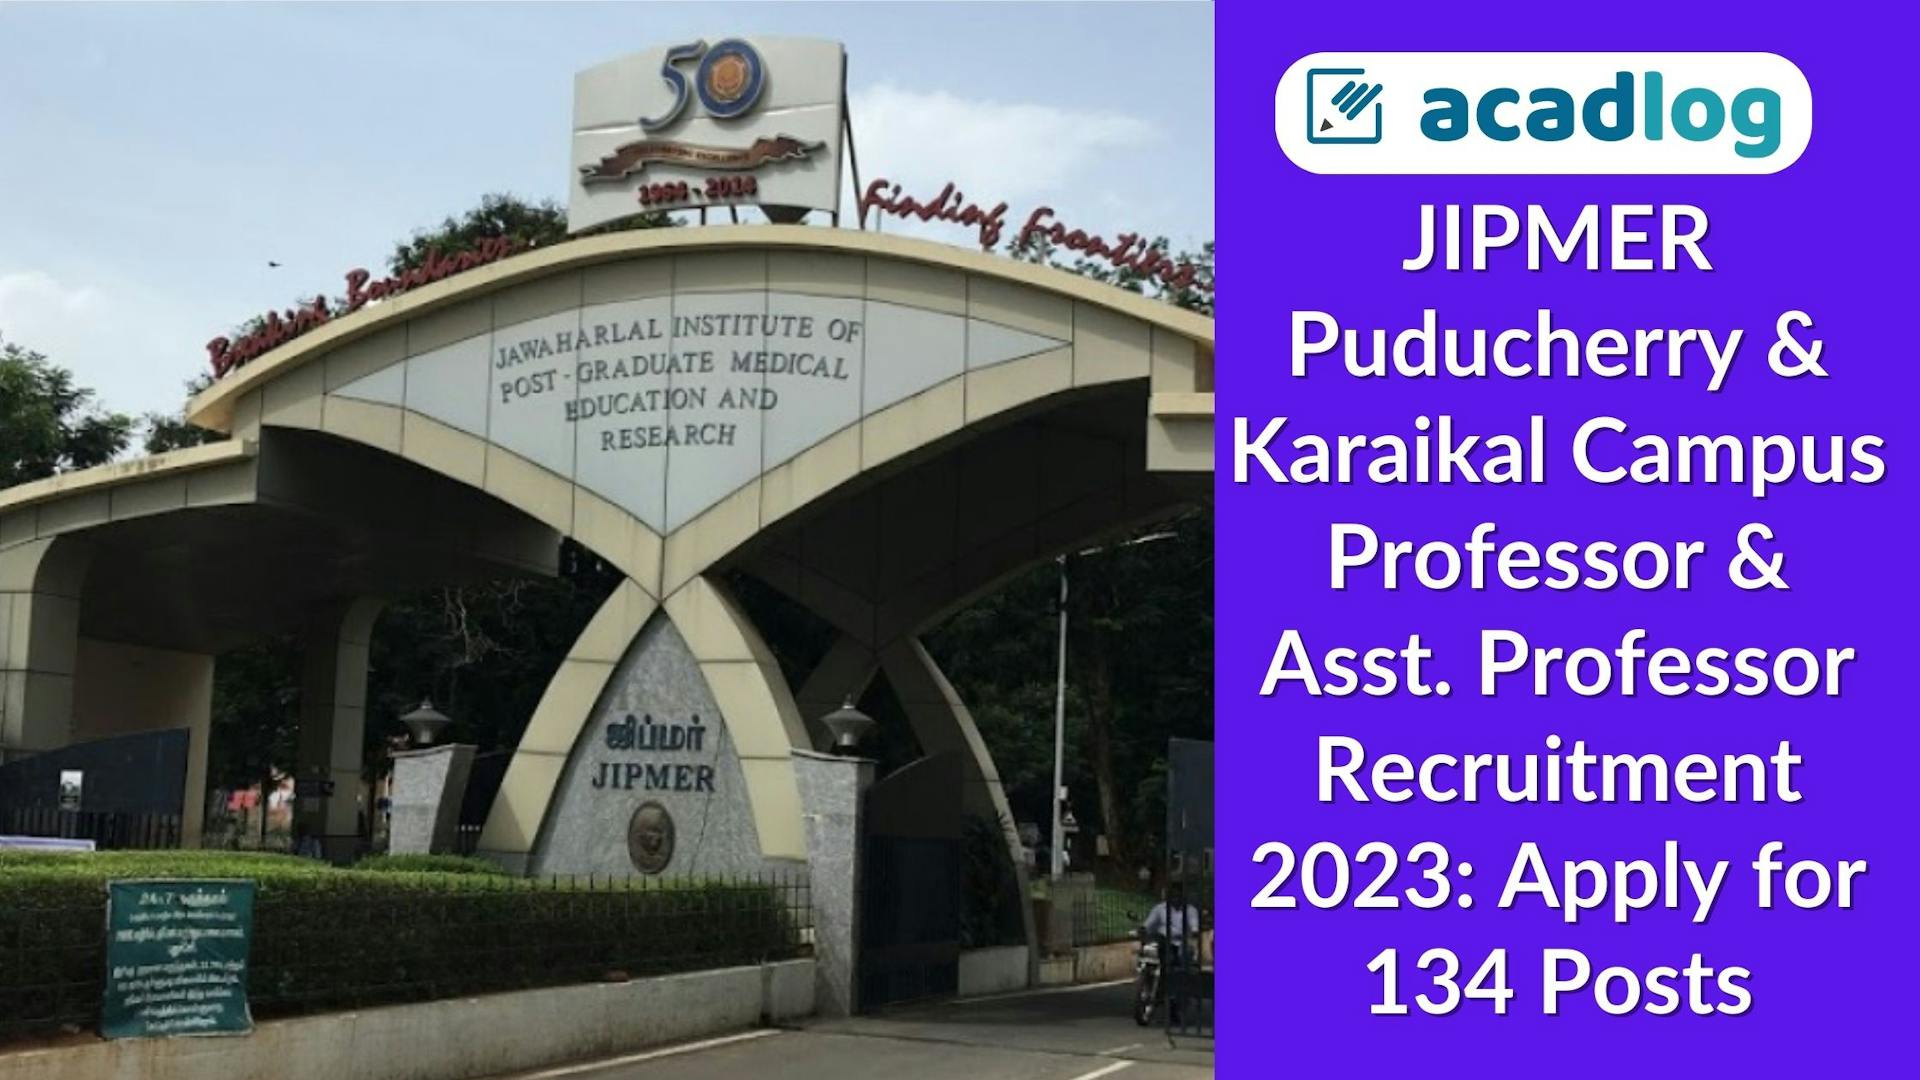 JIPMER Puducherry & Karaikal Campus Professor & Asst. Professor Recruitment 2023: Apply for 134 Posts